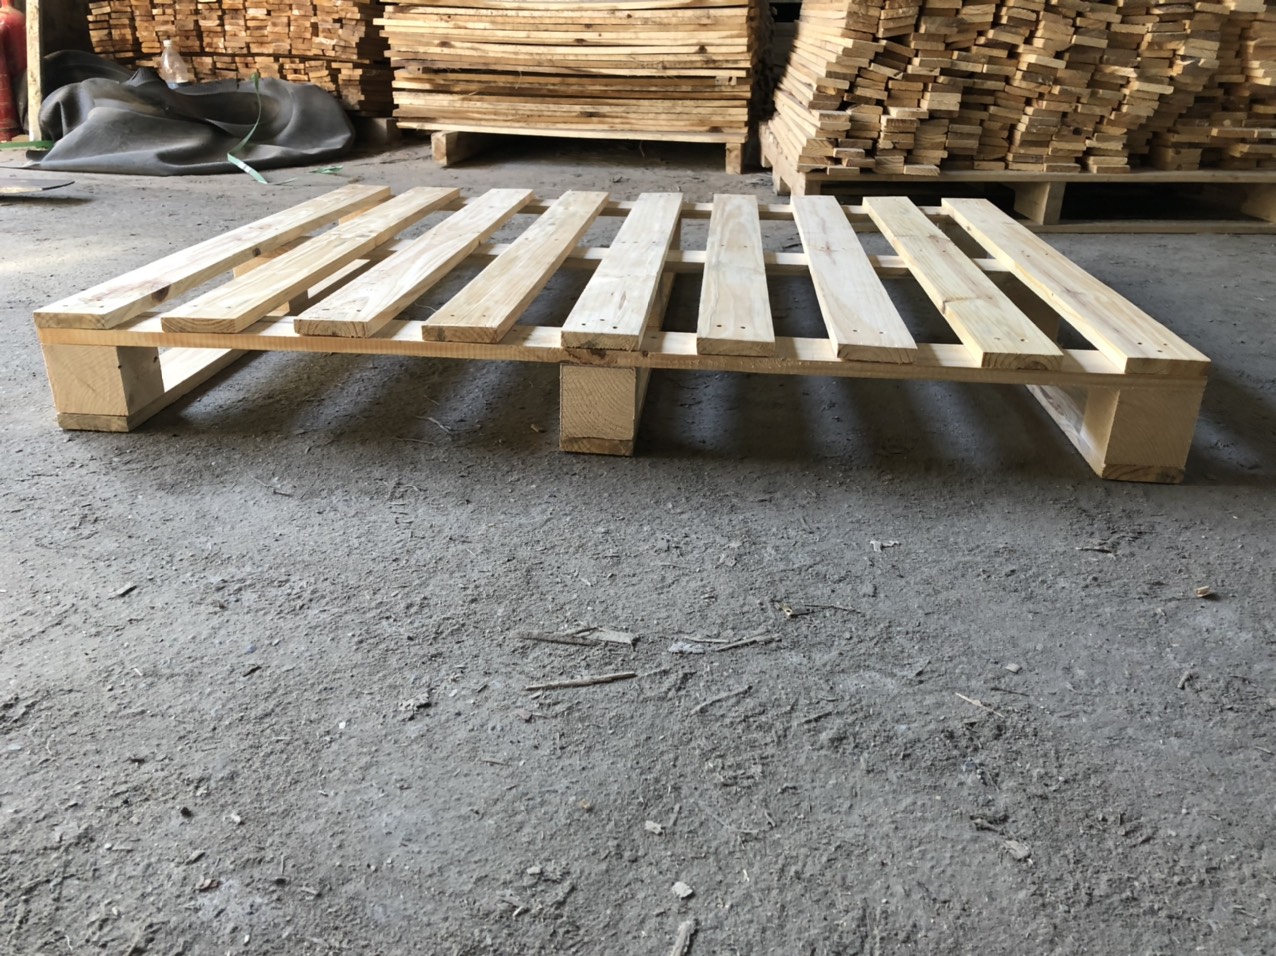 Envi chuyên nghiệp hóa trong quy trình sản xuất pallet gỗ